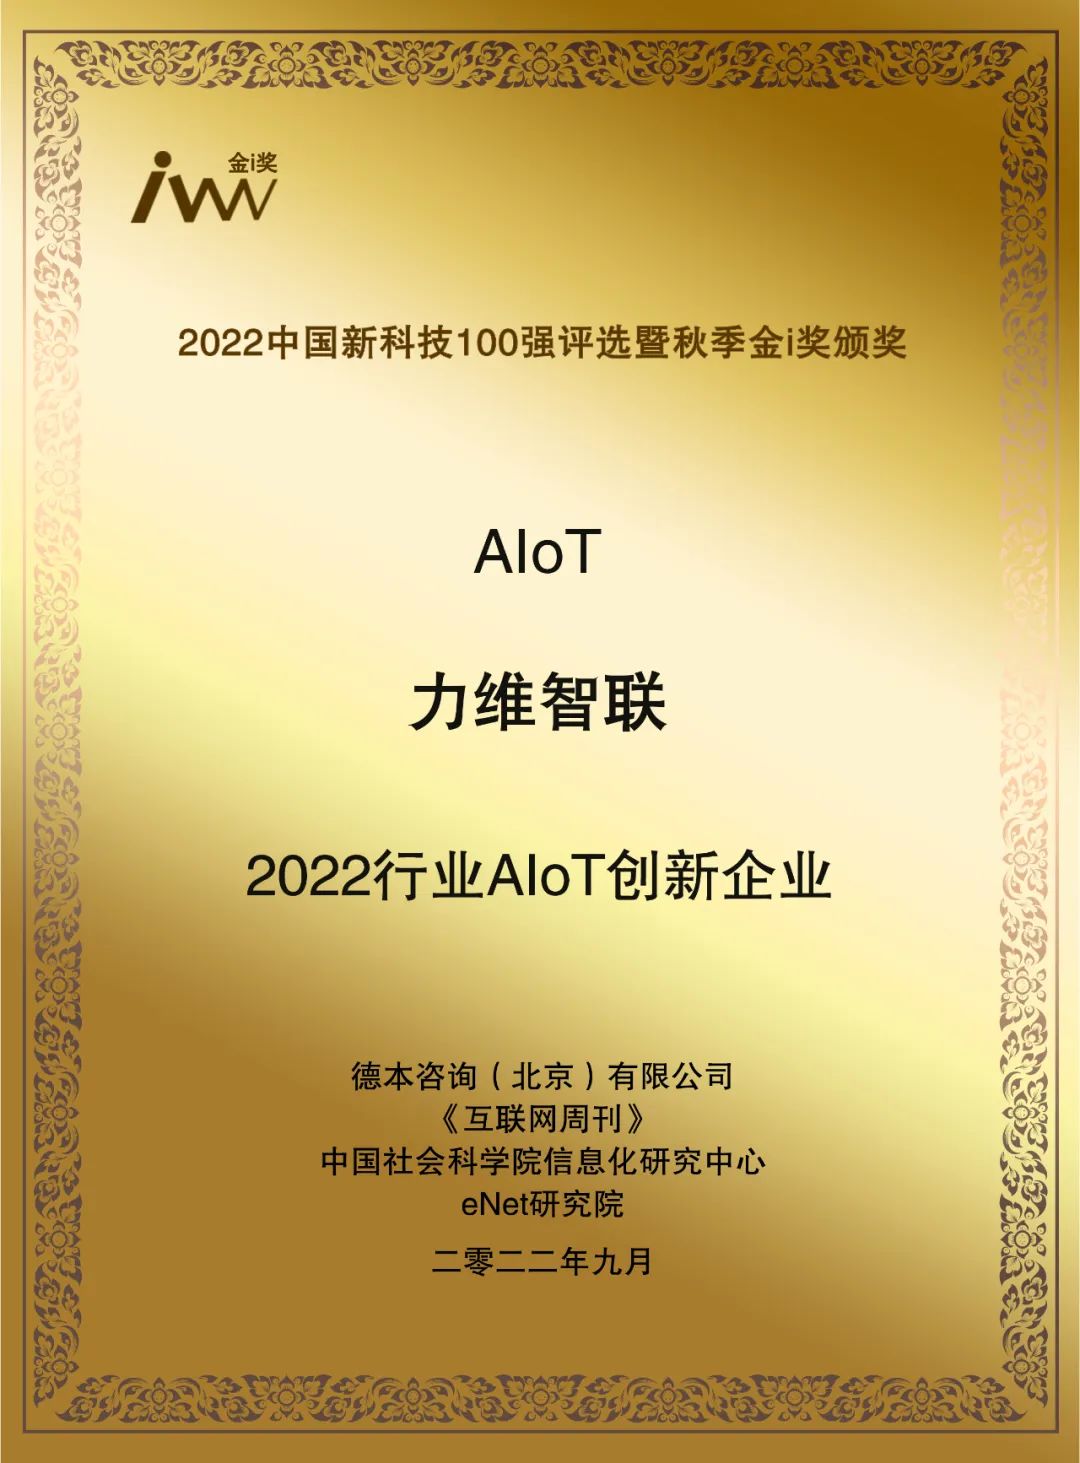 深耕AIoT | 9170官方金沙入口会员登录获评“2022行业AIoT创新企业”